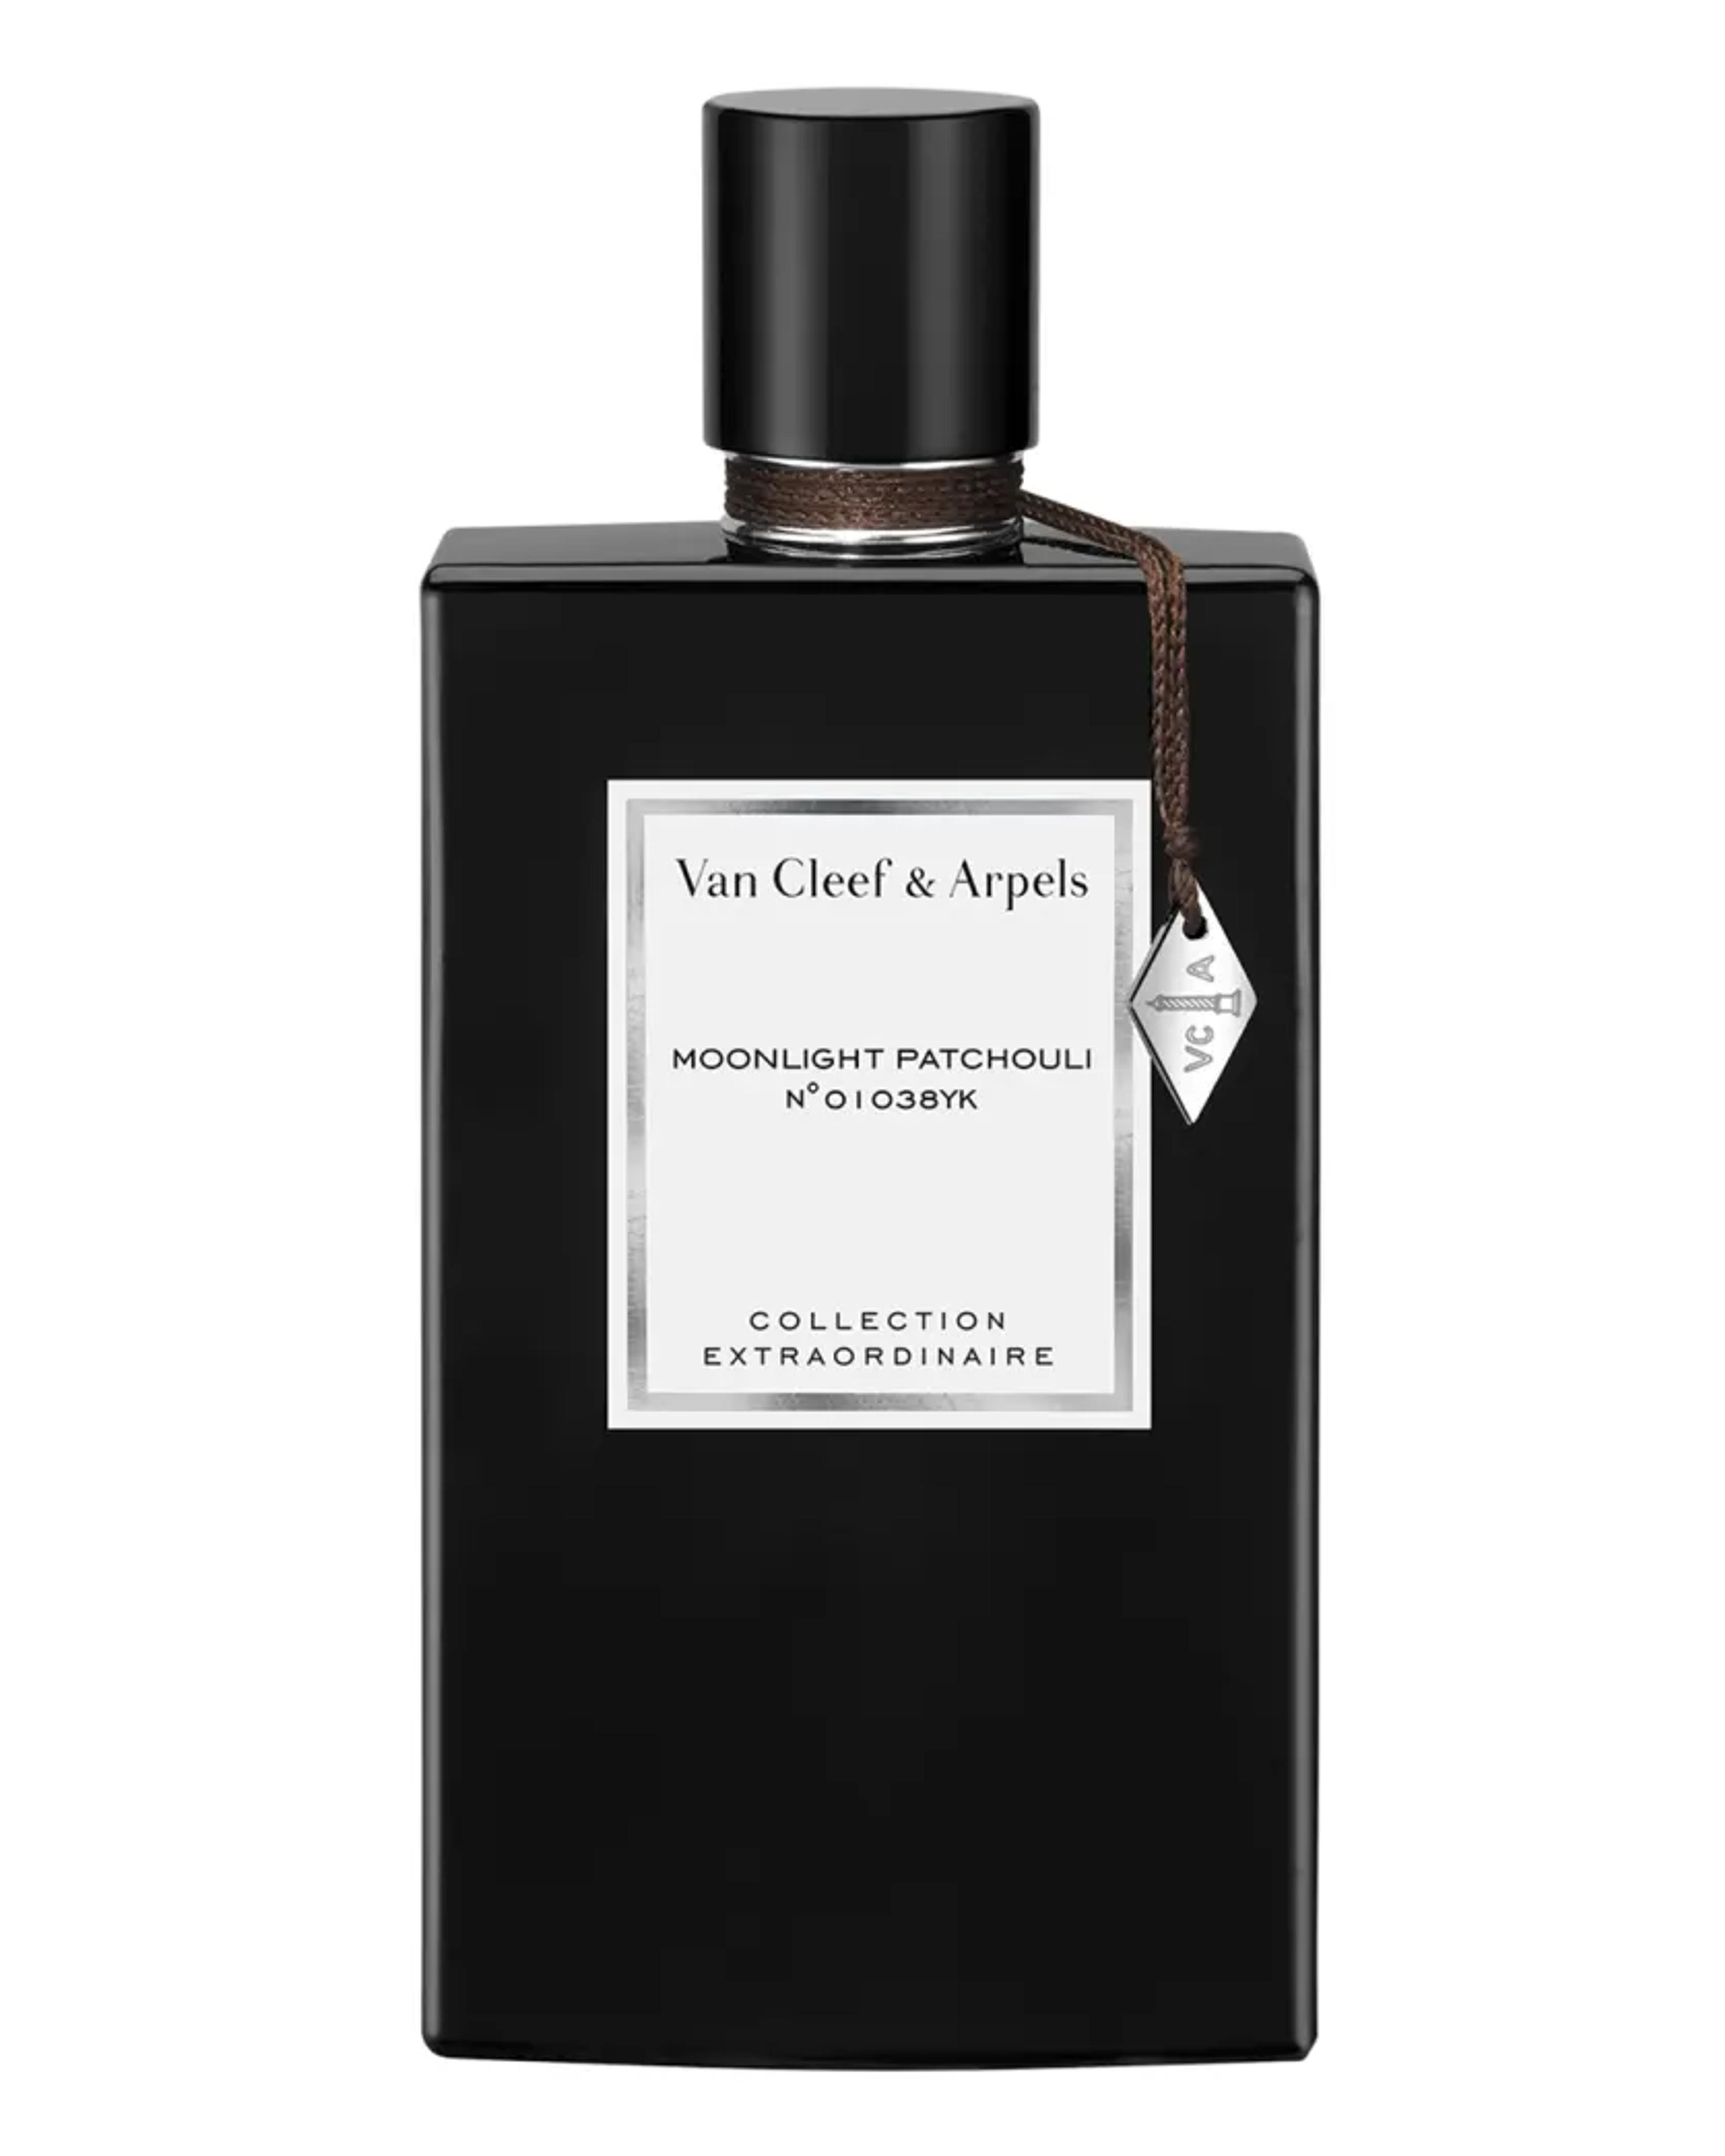 Van Cleef & Arpels Van Cleef & Arpels Collection Extraordinaire Moonlight Patchouli Eau de Toilette, 2.5 oz. | Neiman Marcus